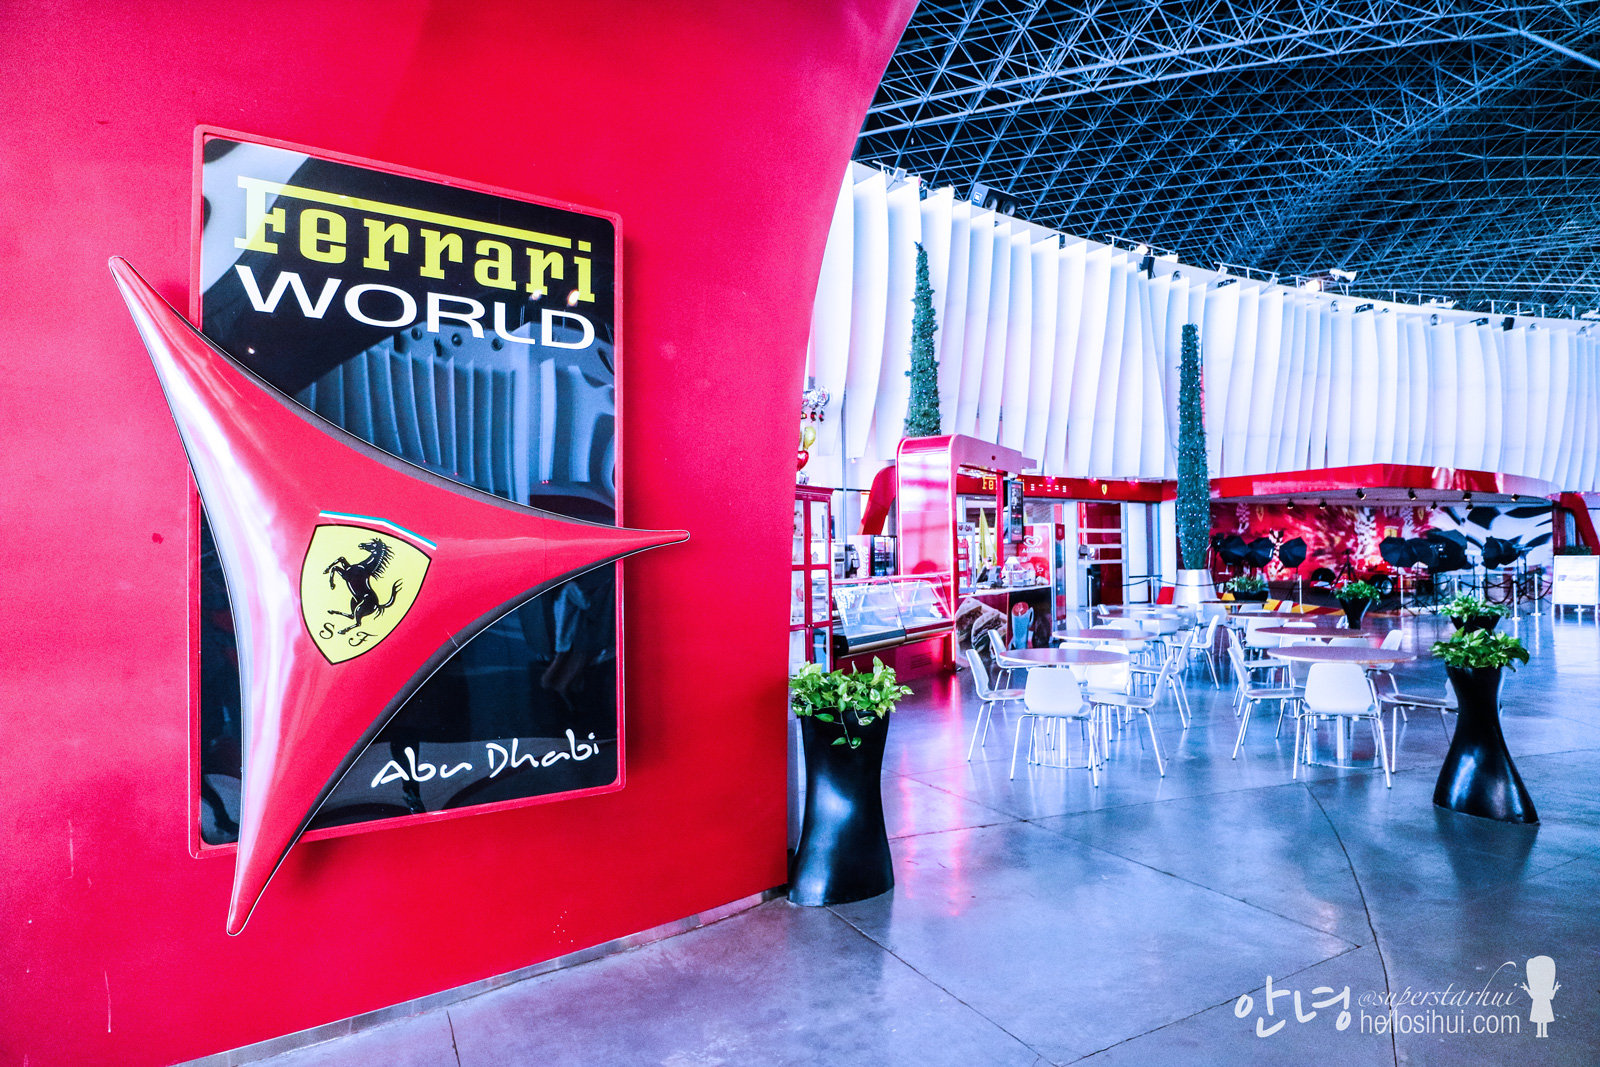 HELLO DUBAI AGAIN – DAY 5: Abu Dhabi 1: Ferrari World